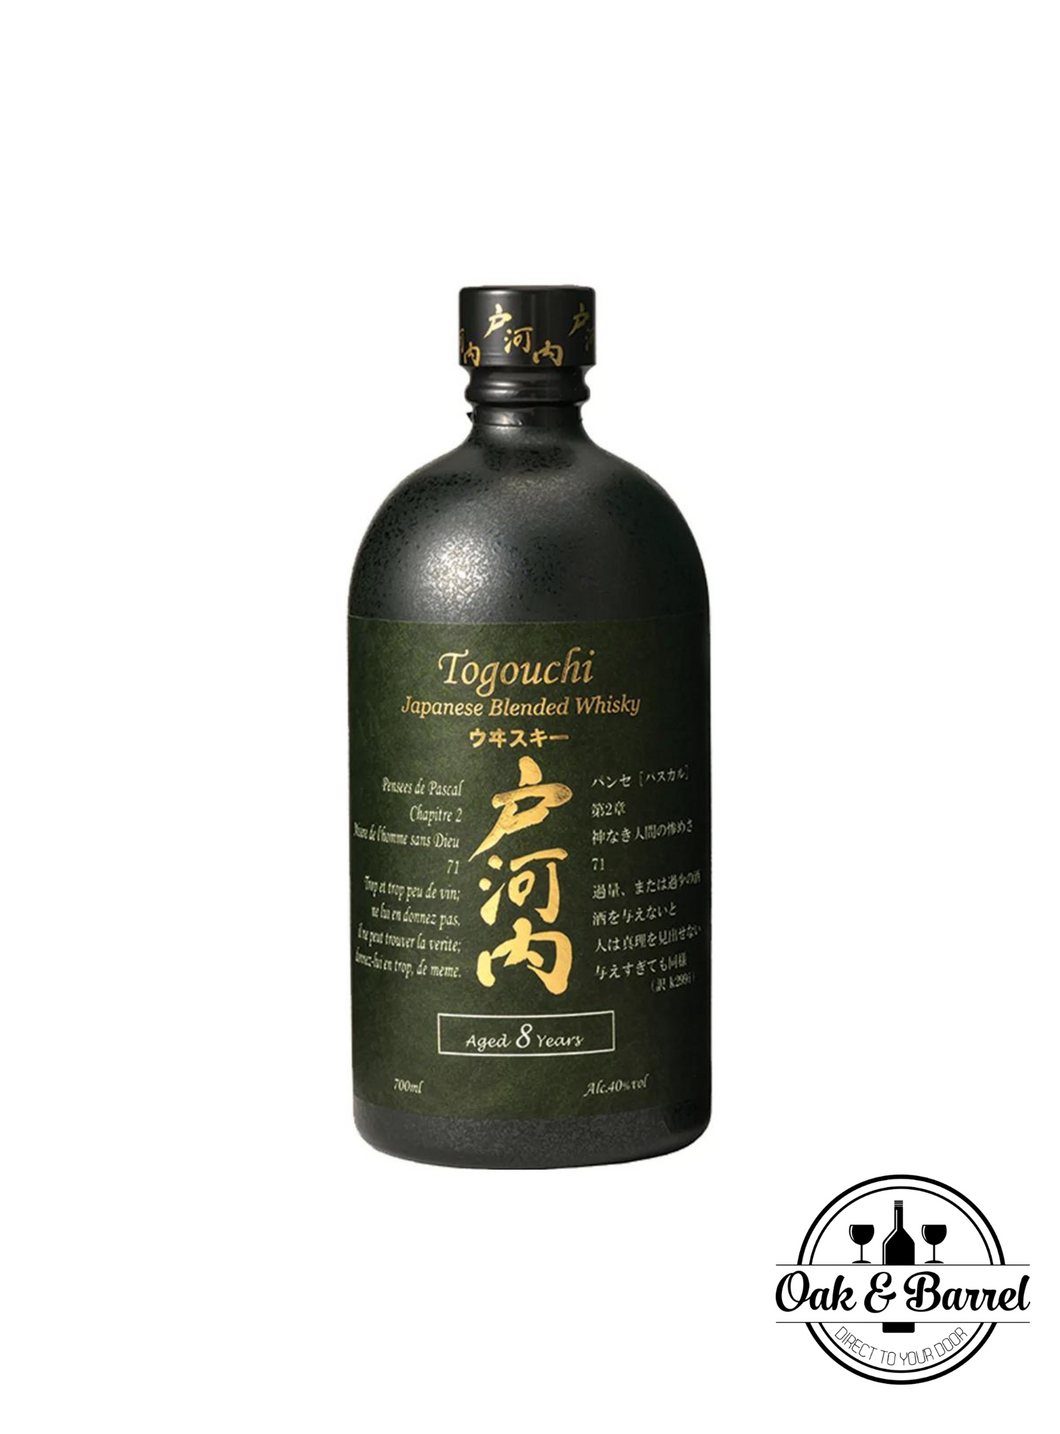 Oak & Barrel: Togouchi Japanese Whisky 8 Year Old, 40% (700ml)